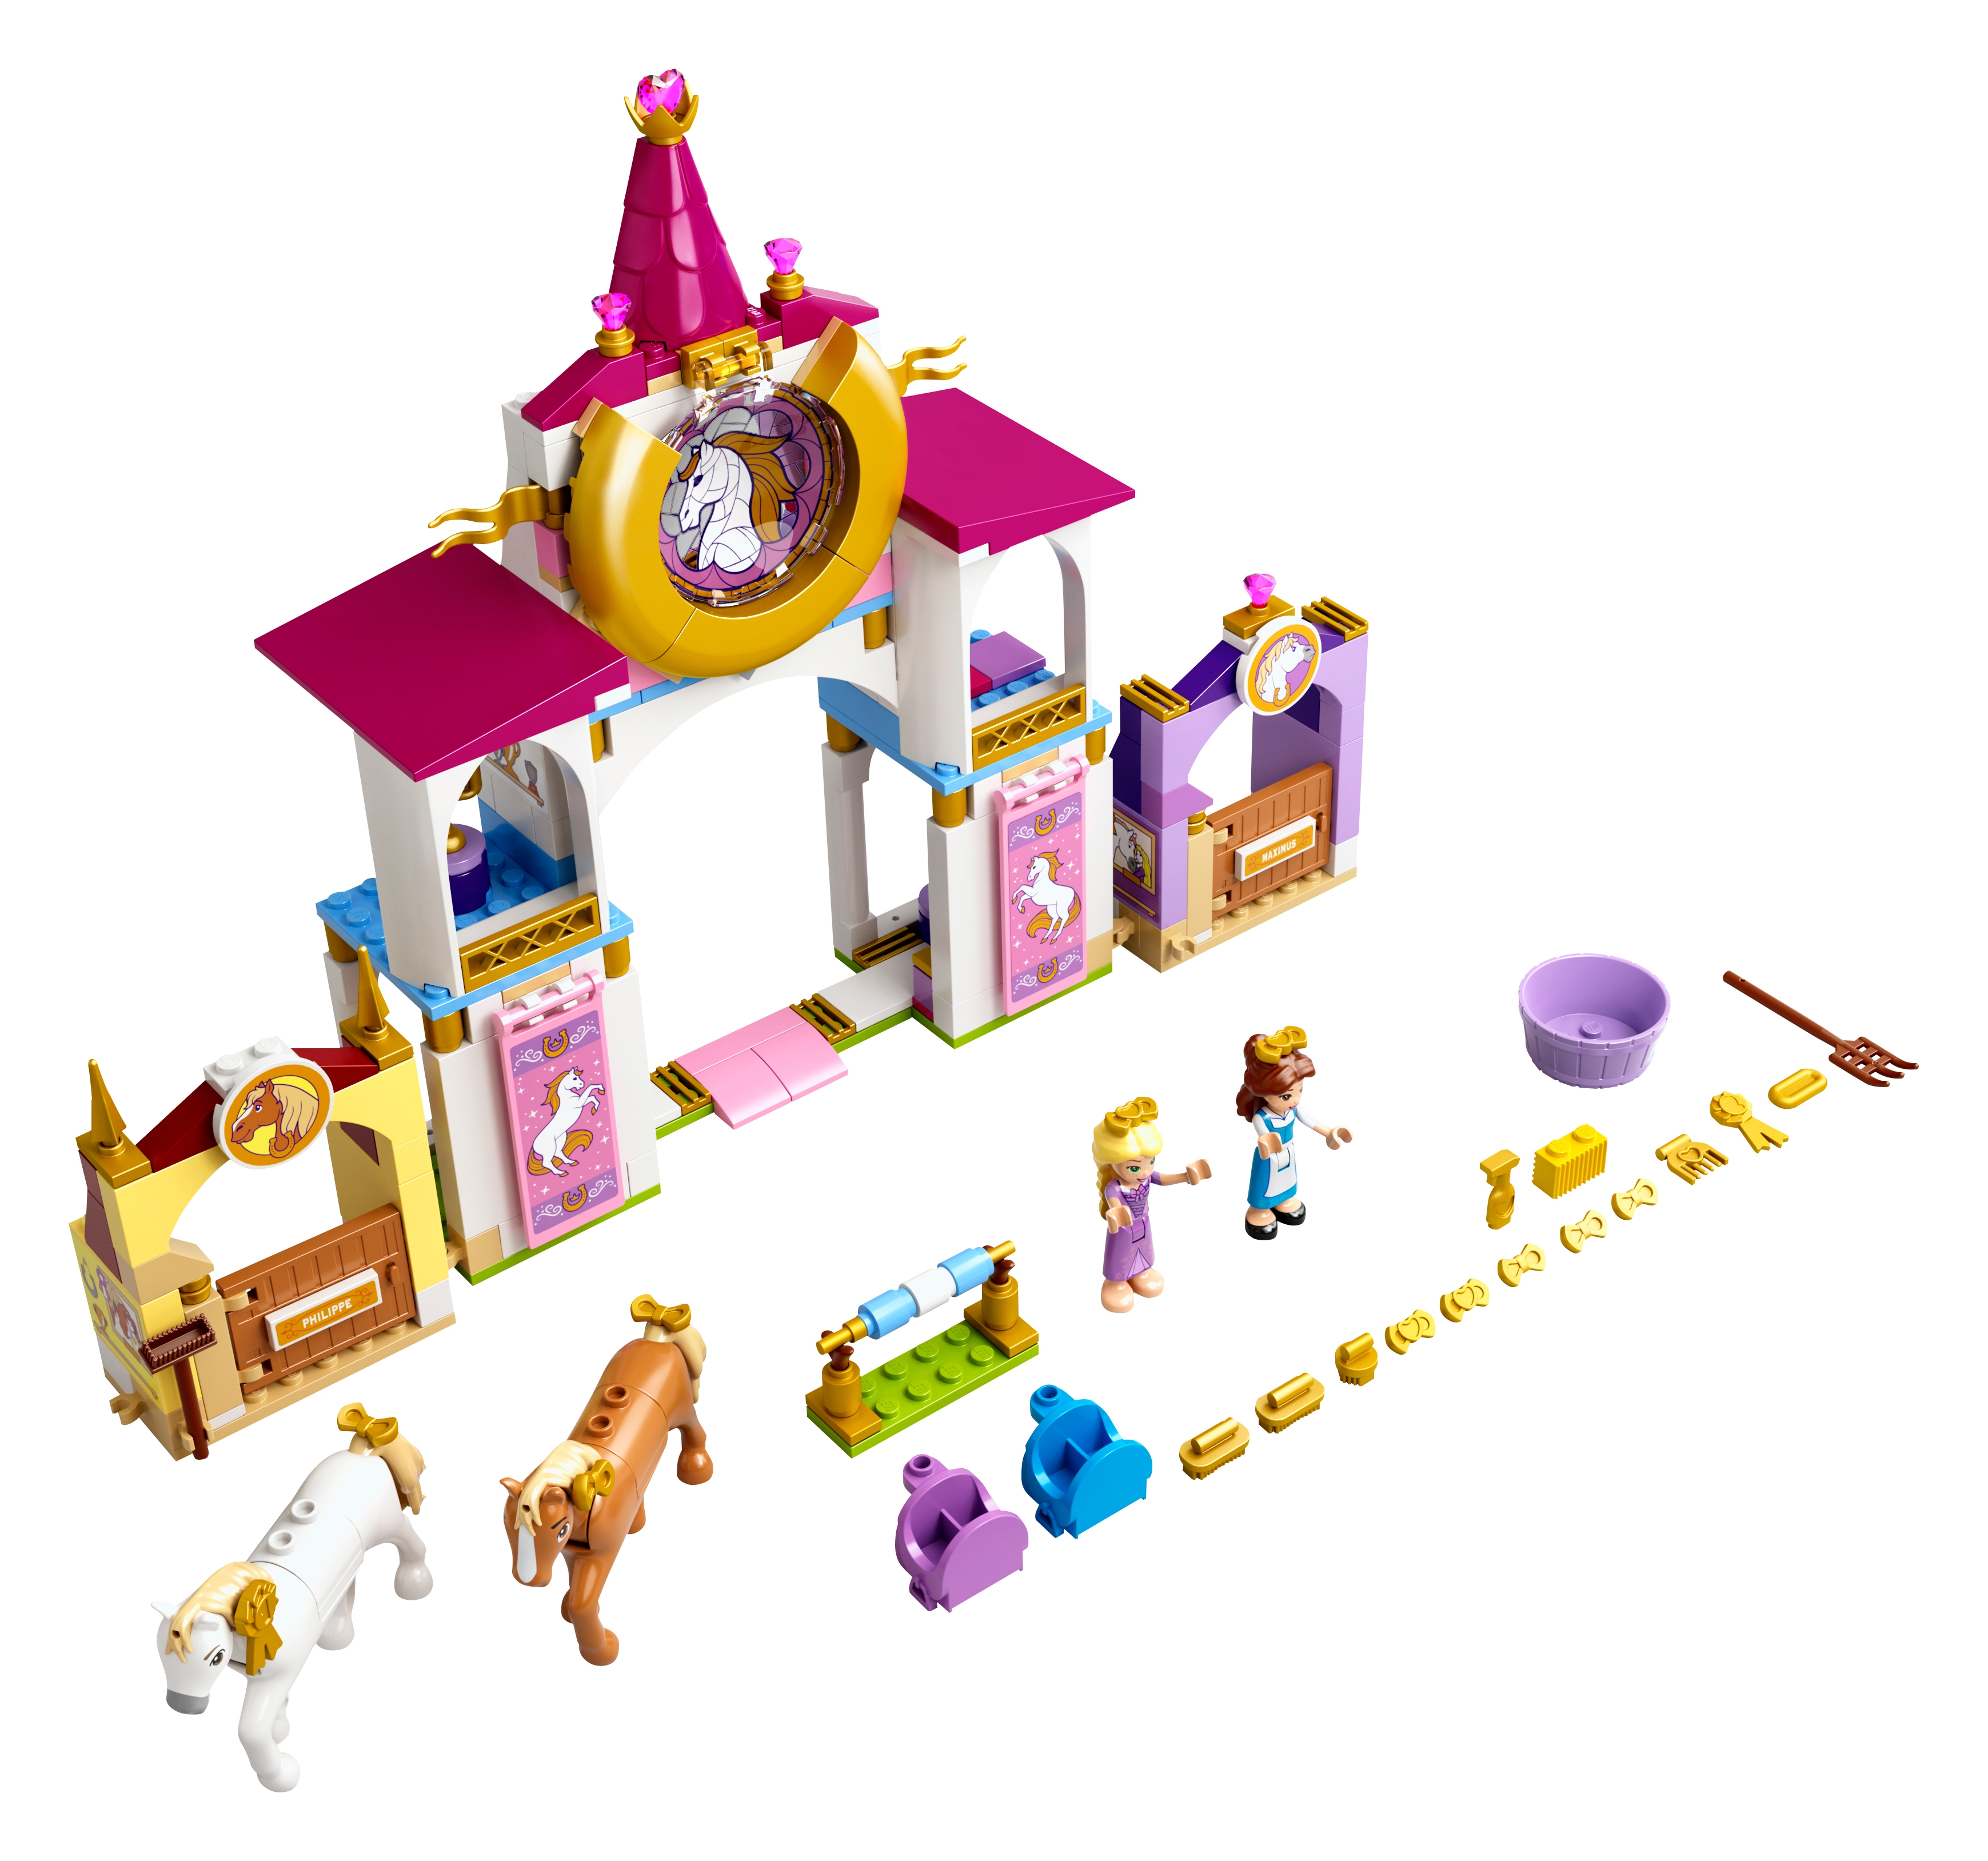 43195-1: Belles und Rapunzels königliche | Ställe APP Shopping-Assistent | Brickbank